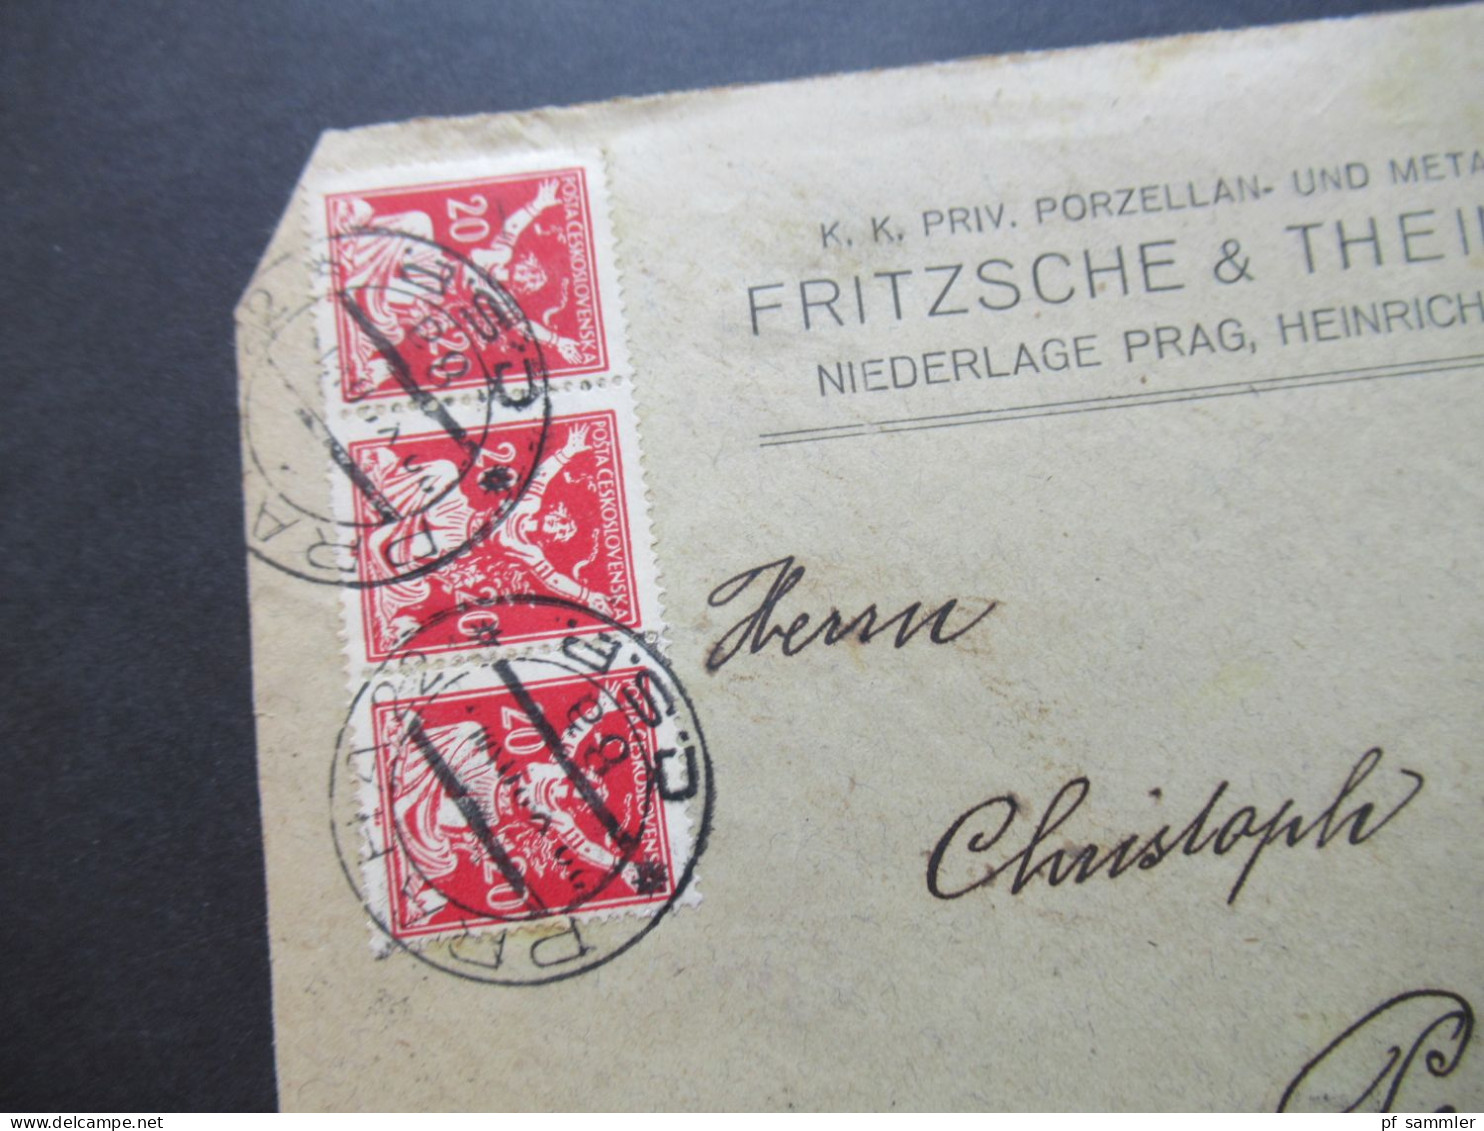 CSSR 1920 Firmenumschlag Porzellan U. Metallwarenfabrik Fritzsche & Thein, Prag. Rückseitig Marken Hradschin / Mucha - Storia Postale